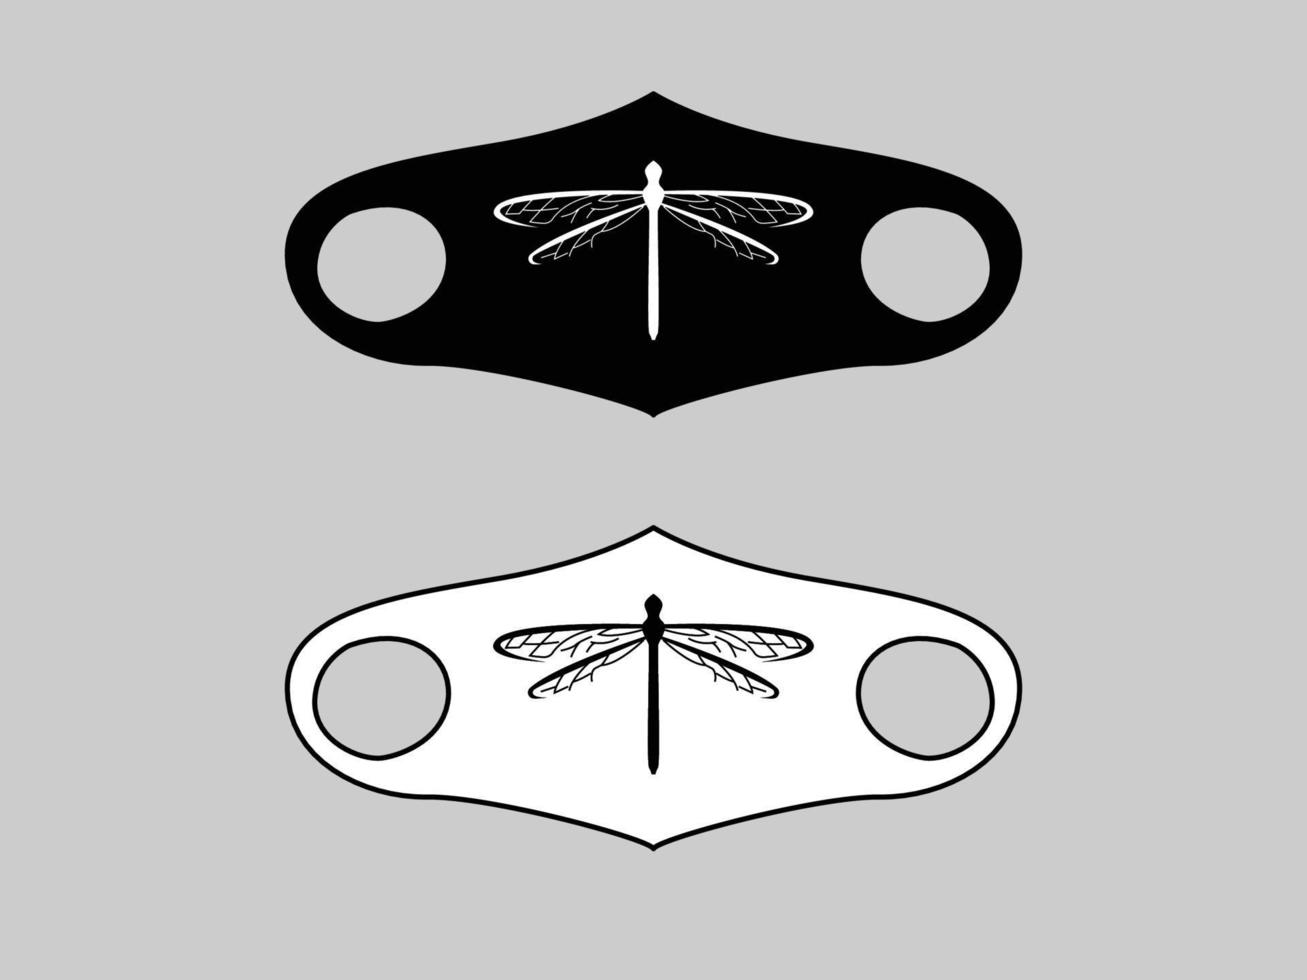 maskerontwerp met libellenafbeeldingen, hedendaagse maskers, geïllustreerde maskerontwerpen vector